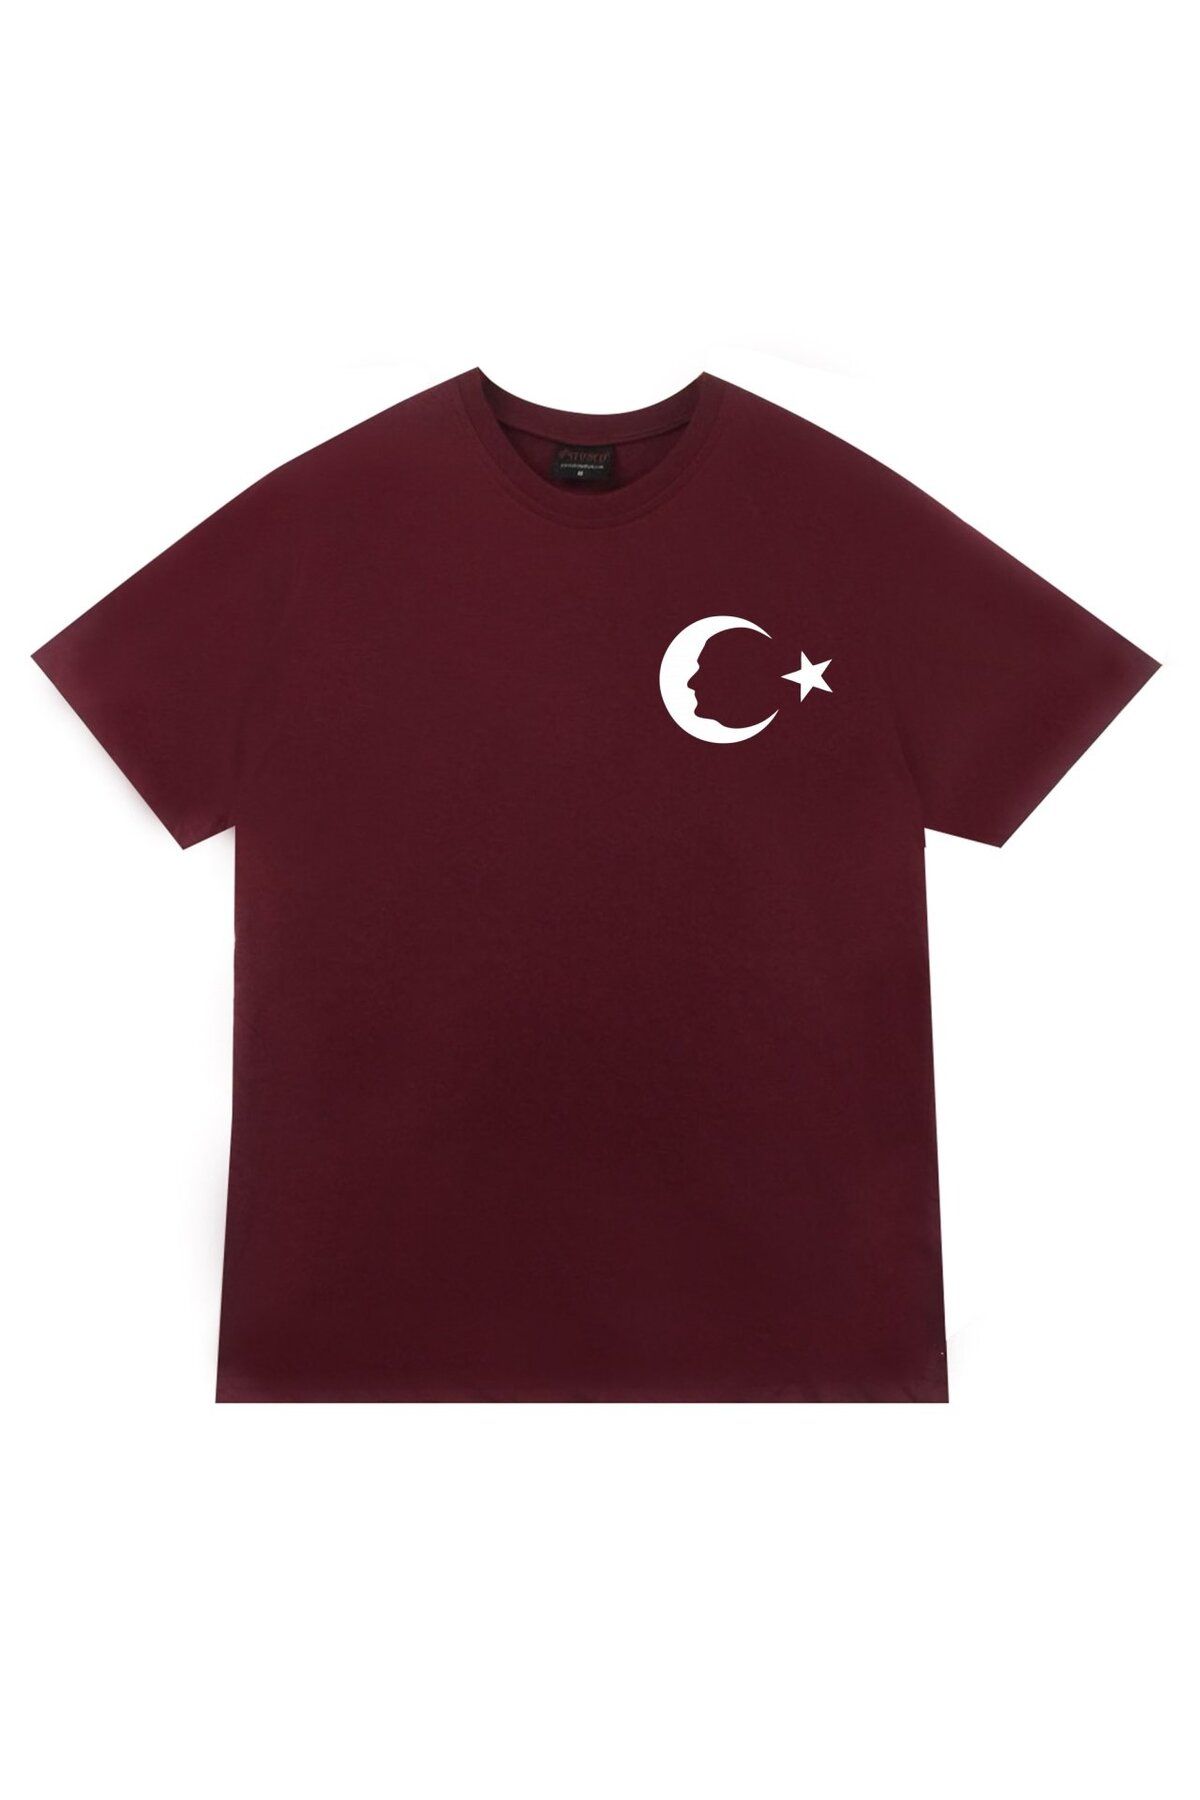 fame-stoned Unisex Bordo Gazi Mustafa Kemal Atatürk Baskılı T-Shirt